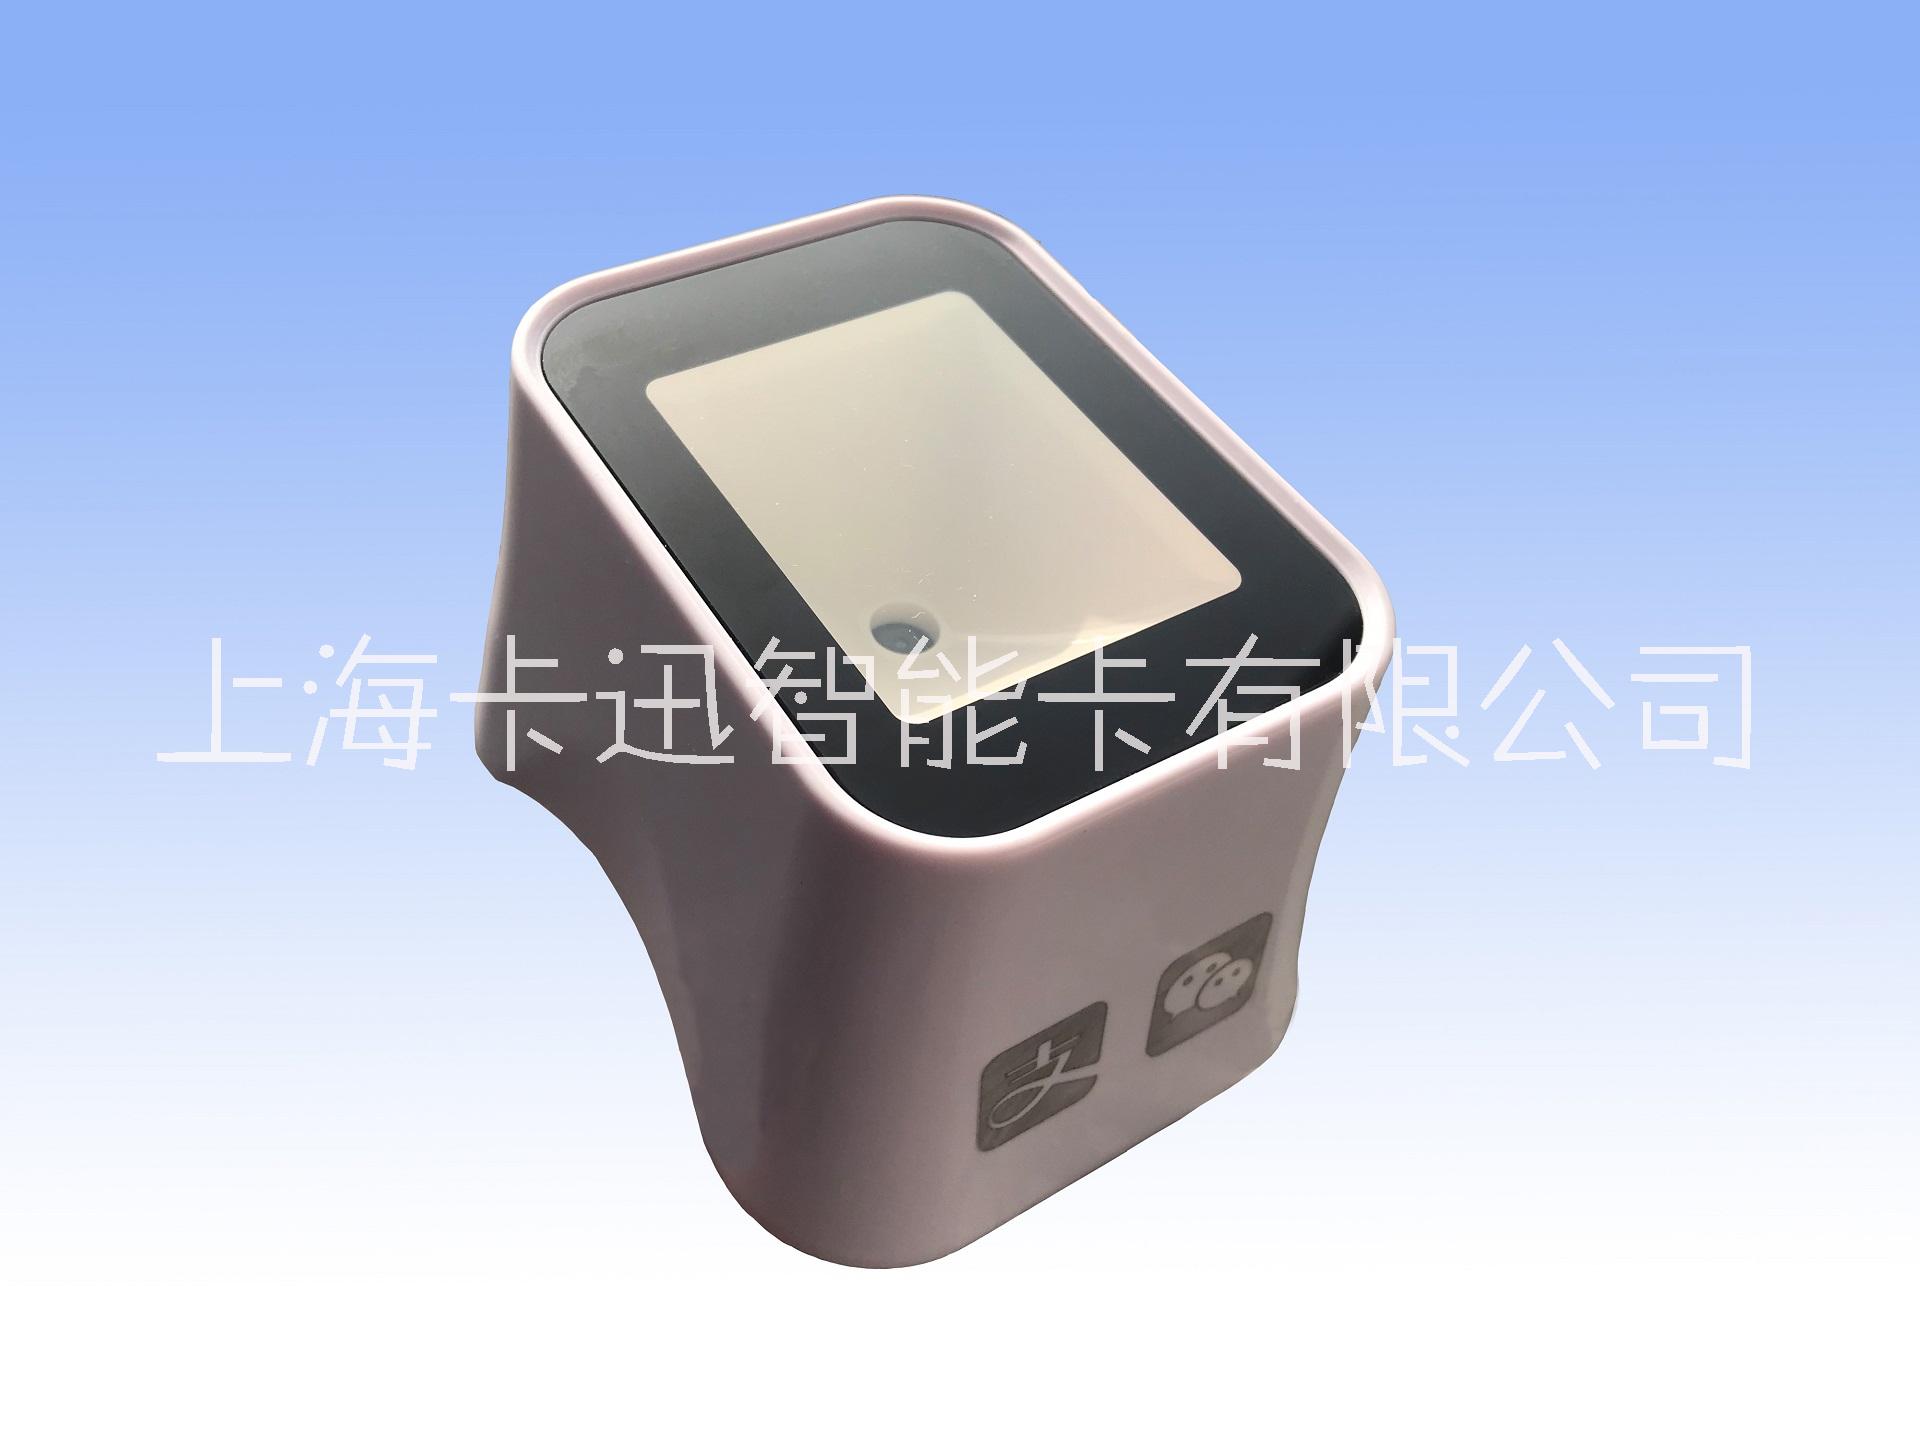 KX1405二维码支付盒子上海卡迅生产销售021-51697615